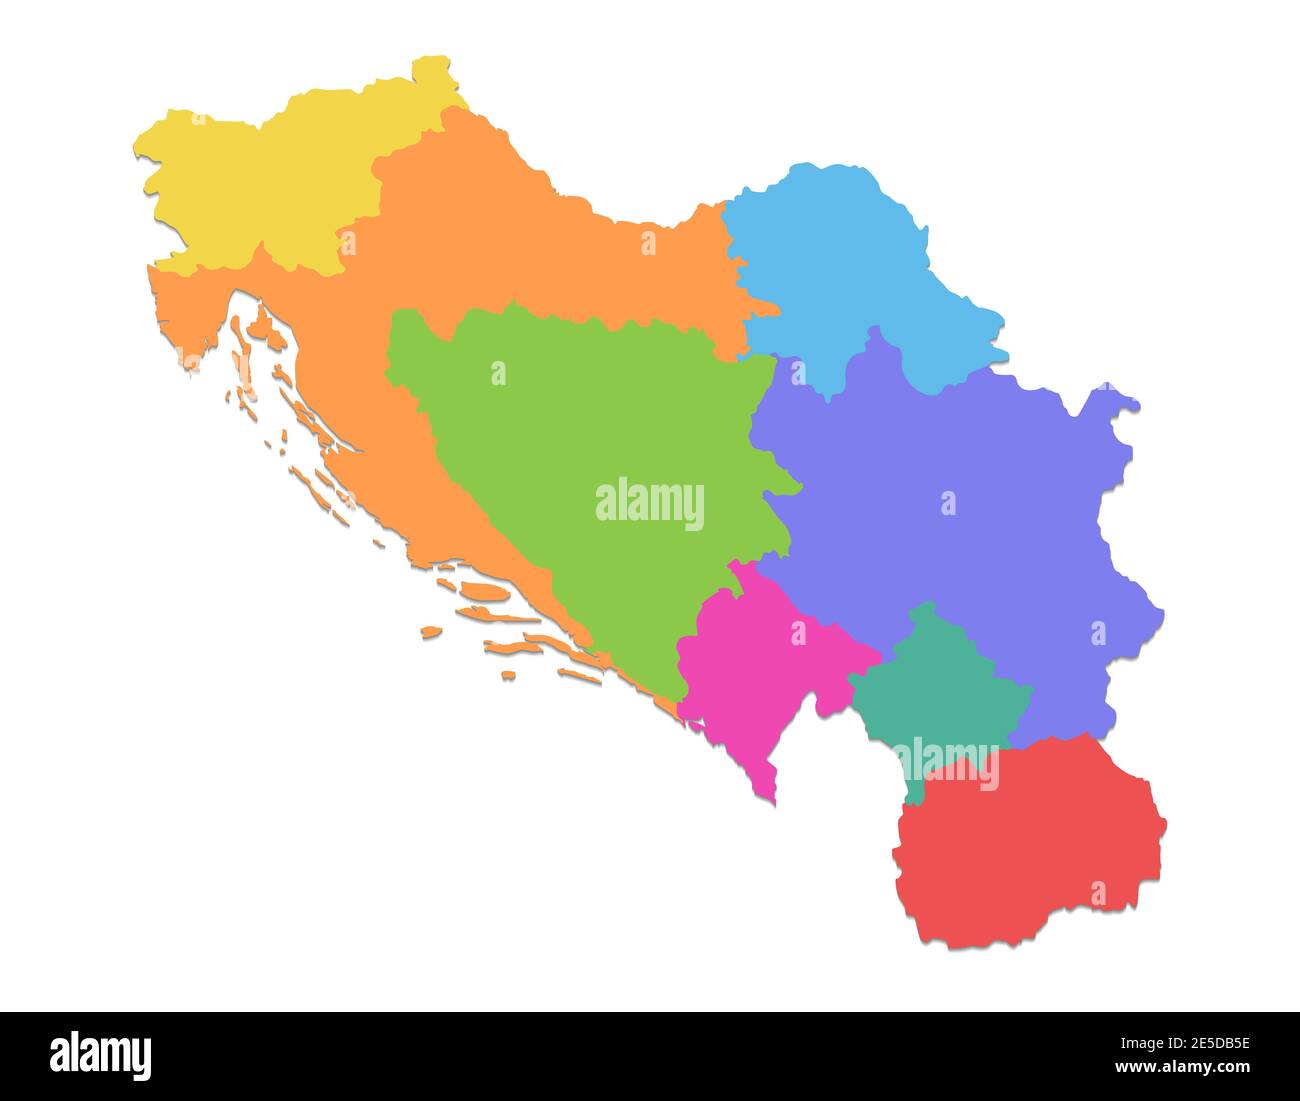 Mappa jugoslava, divisione amministrativa, singole regioni separate, mappa colori isolata su sfondo bianco vuoto Foto Stock